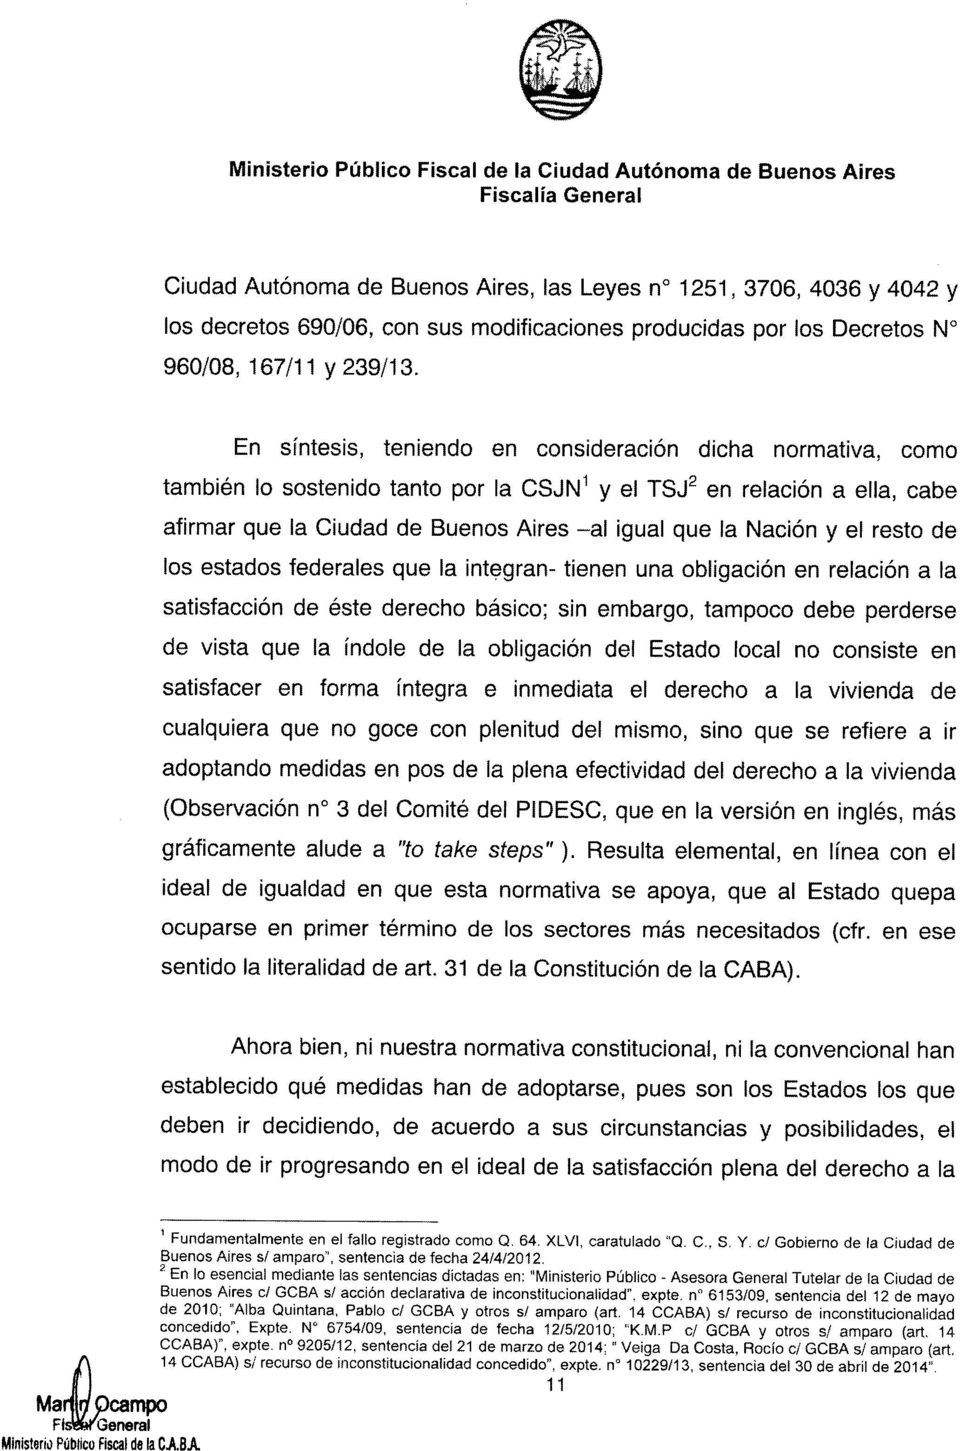 En sintesis, teniendo en consideracion dicha normativa, como tambien 10 sostenido tanto par la CSJN 1 y el TSJ 2 en relacion a ella, cabe afirmar que la Ciudad de Buenos Aires -al igual que la Nacion